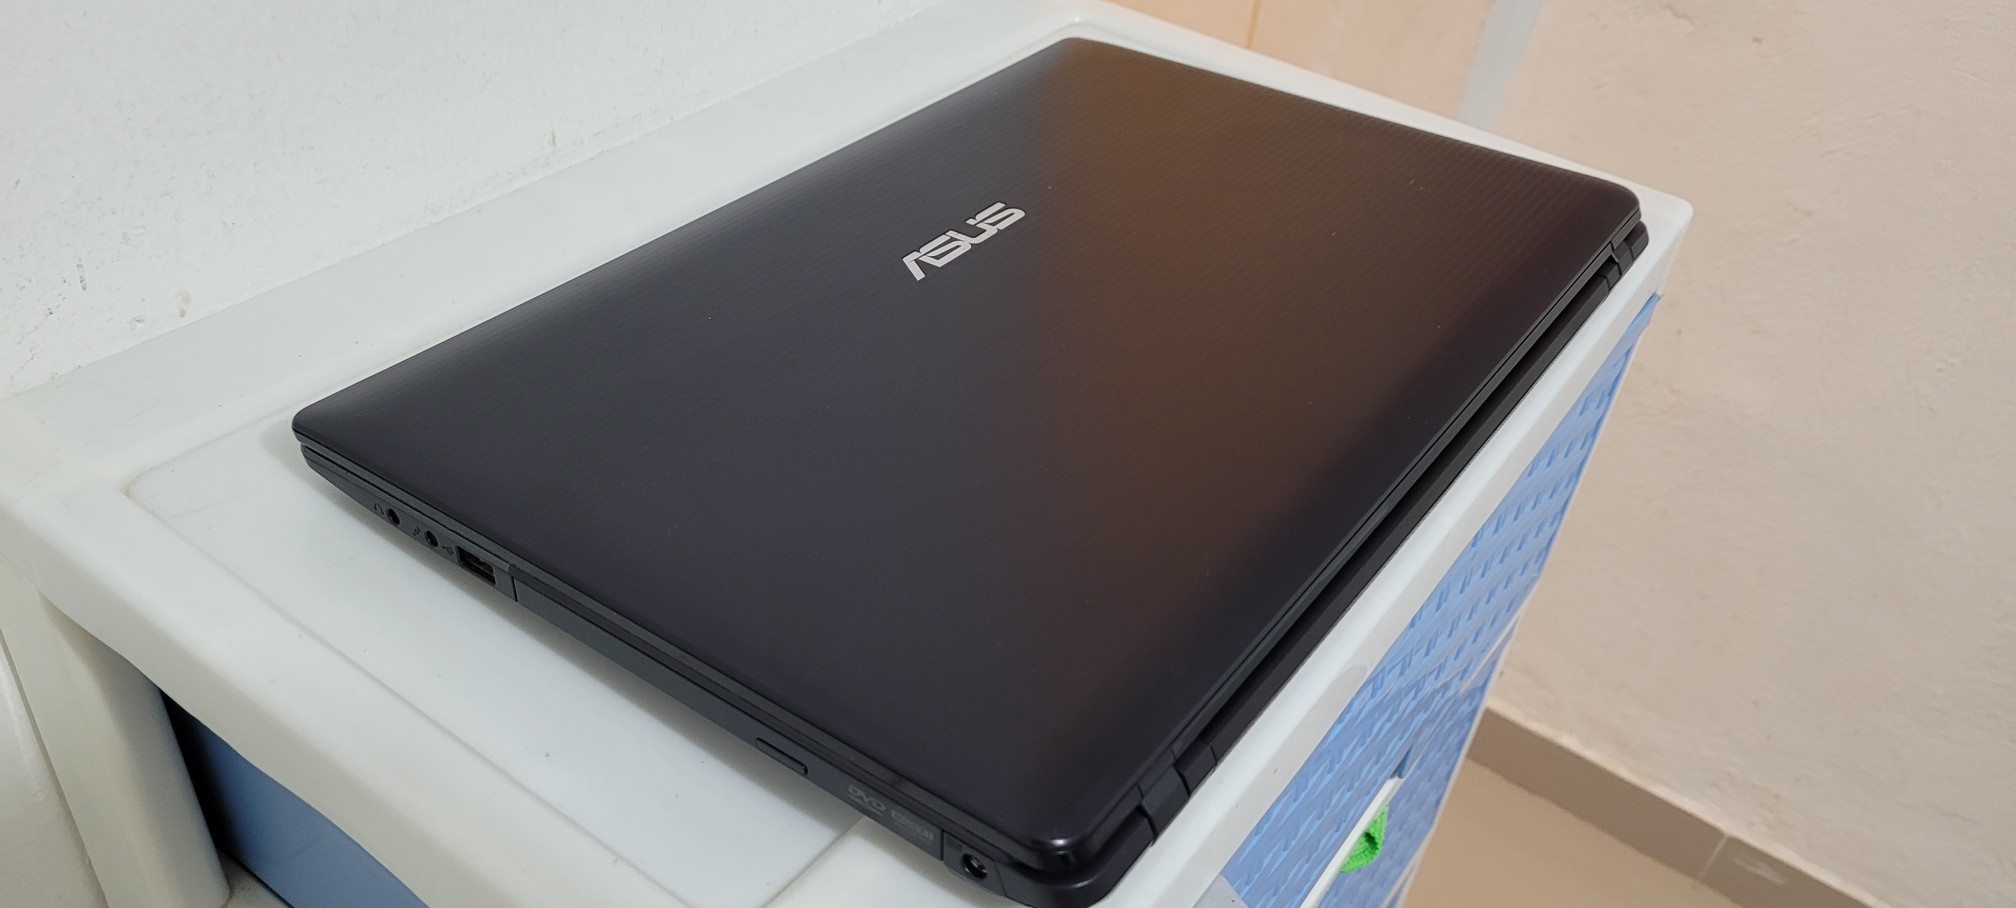 computadoras y laptops - laptop Asus A8 17 Pulg Ram 8gb Disco 128gb Solido New 1